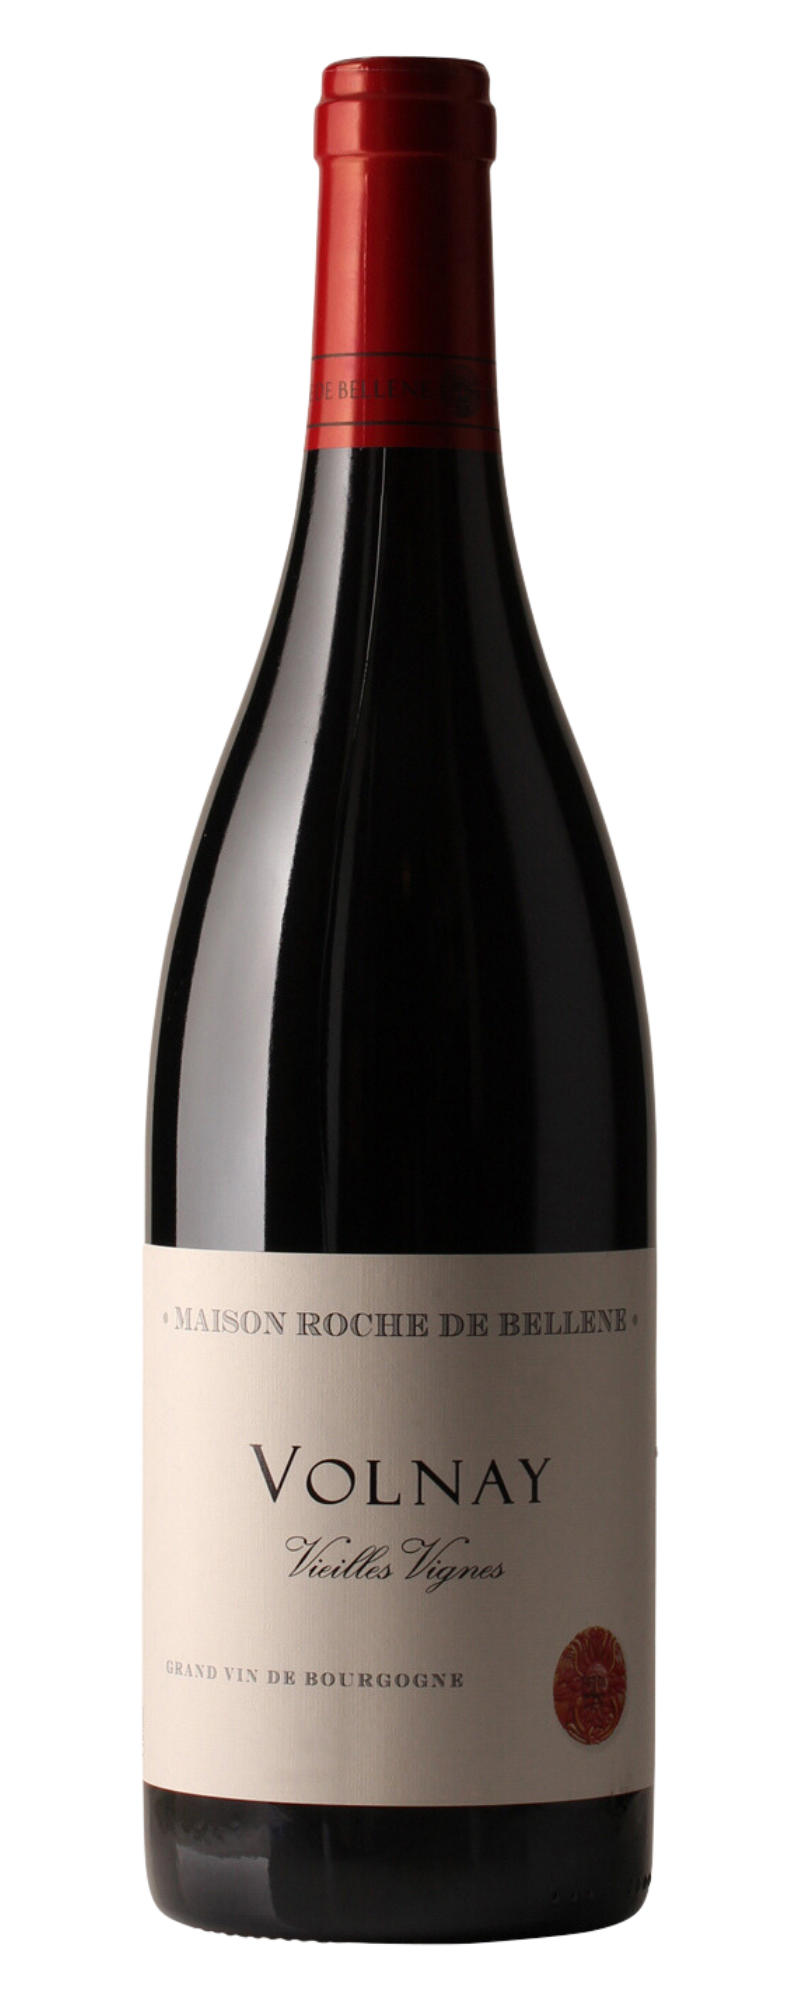 Maison Roche de Bellene Volnay Vieilles Vignes Burgundy 2018